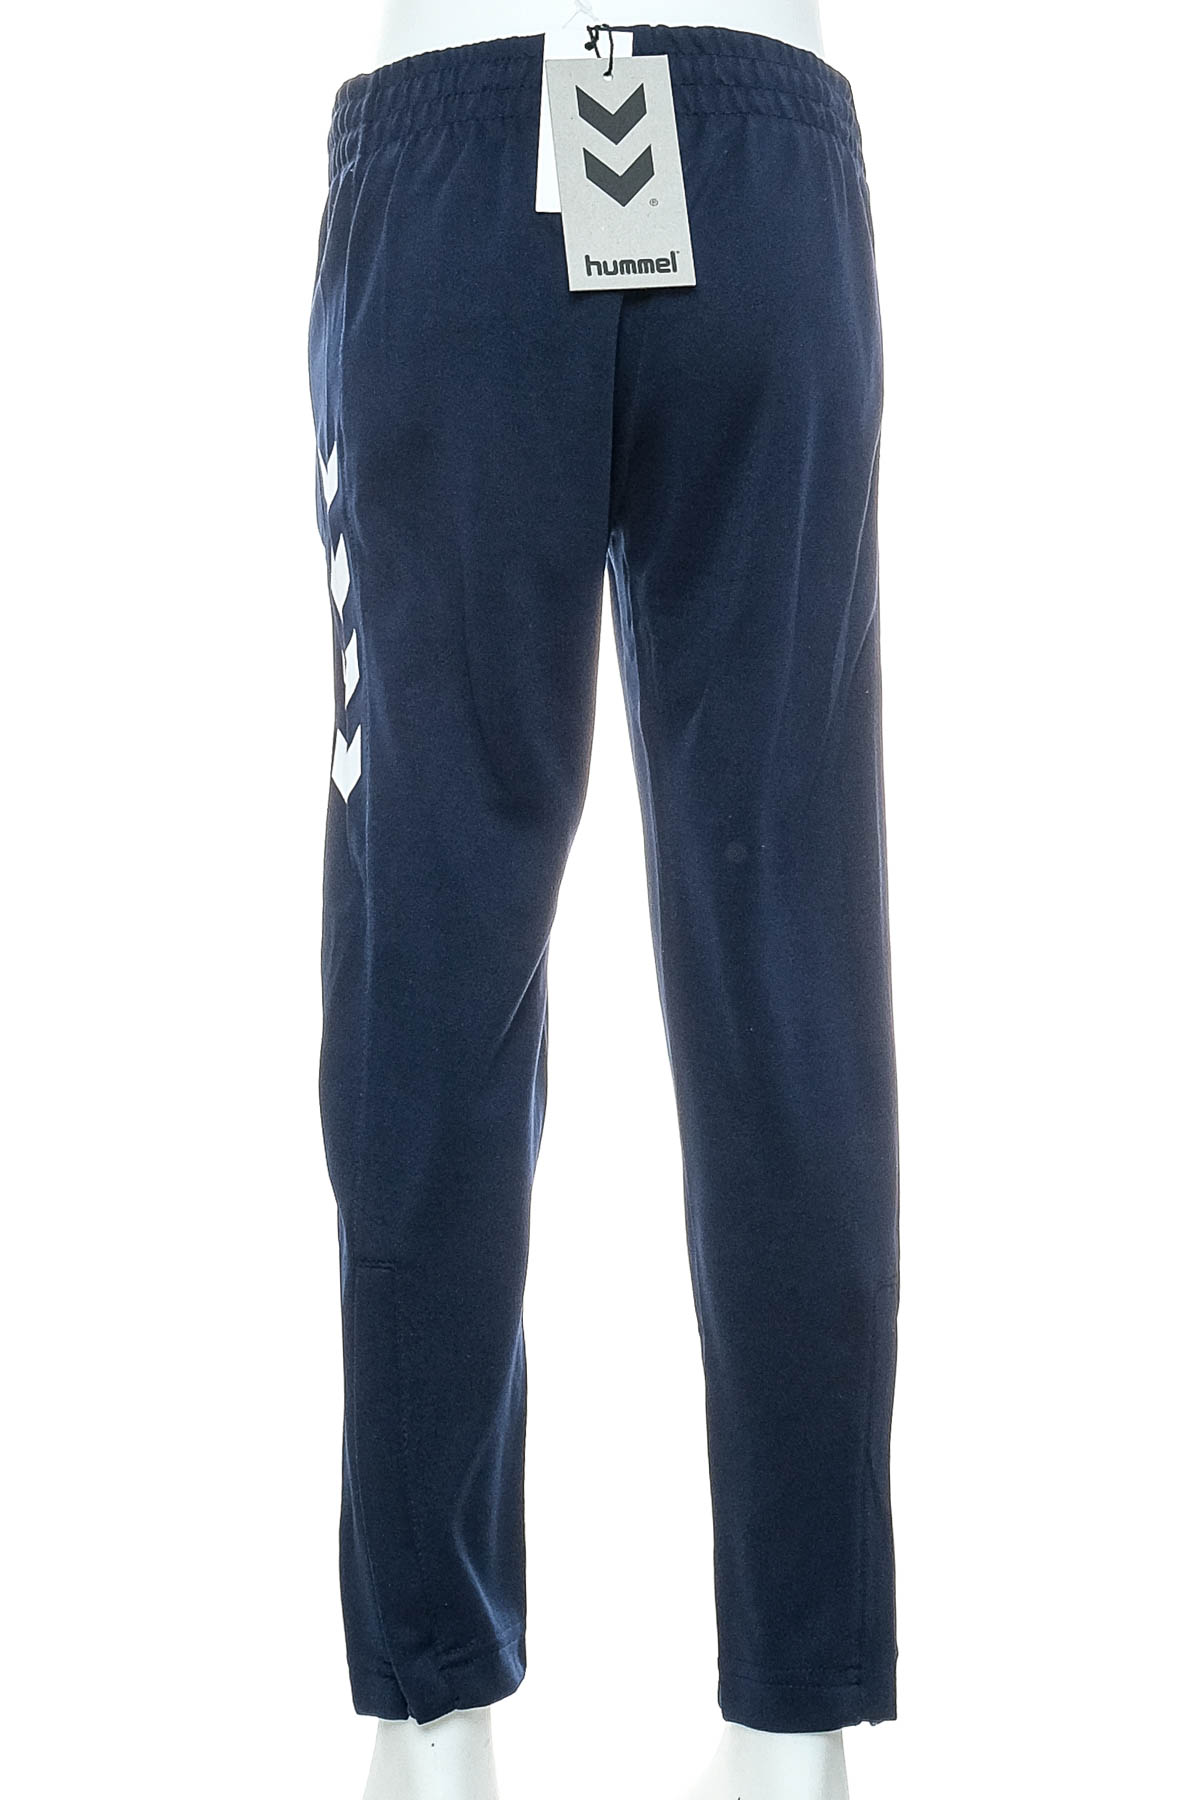 Pantaloni de sport pentru băiat - Hummel - 1